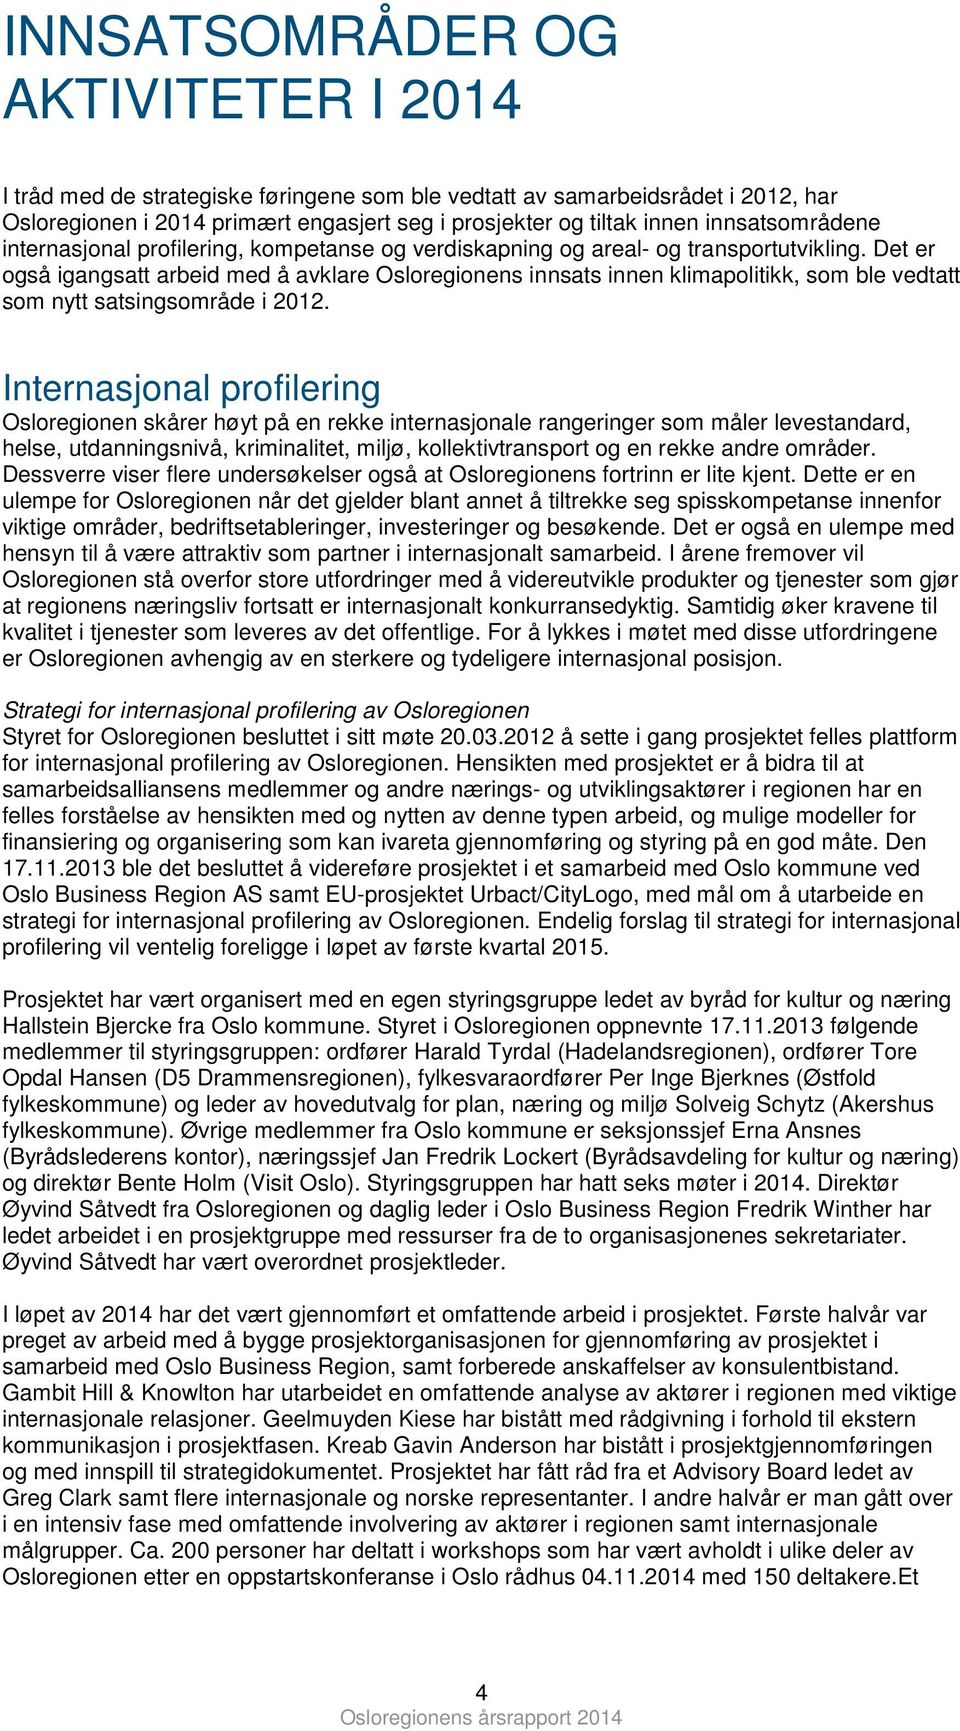 Det er gså igangsatt arbeid med å avklare Oslreginens innsats innen klimaplitikk, sm ble vedtatt sm nytt satsingsmråde i 2012.